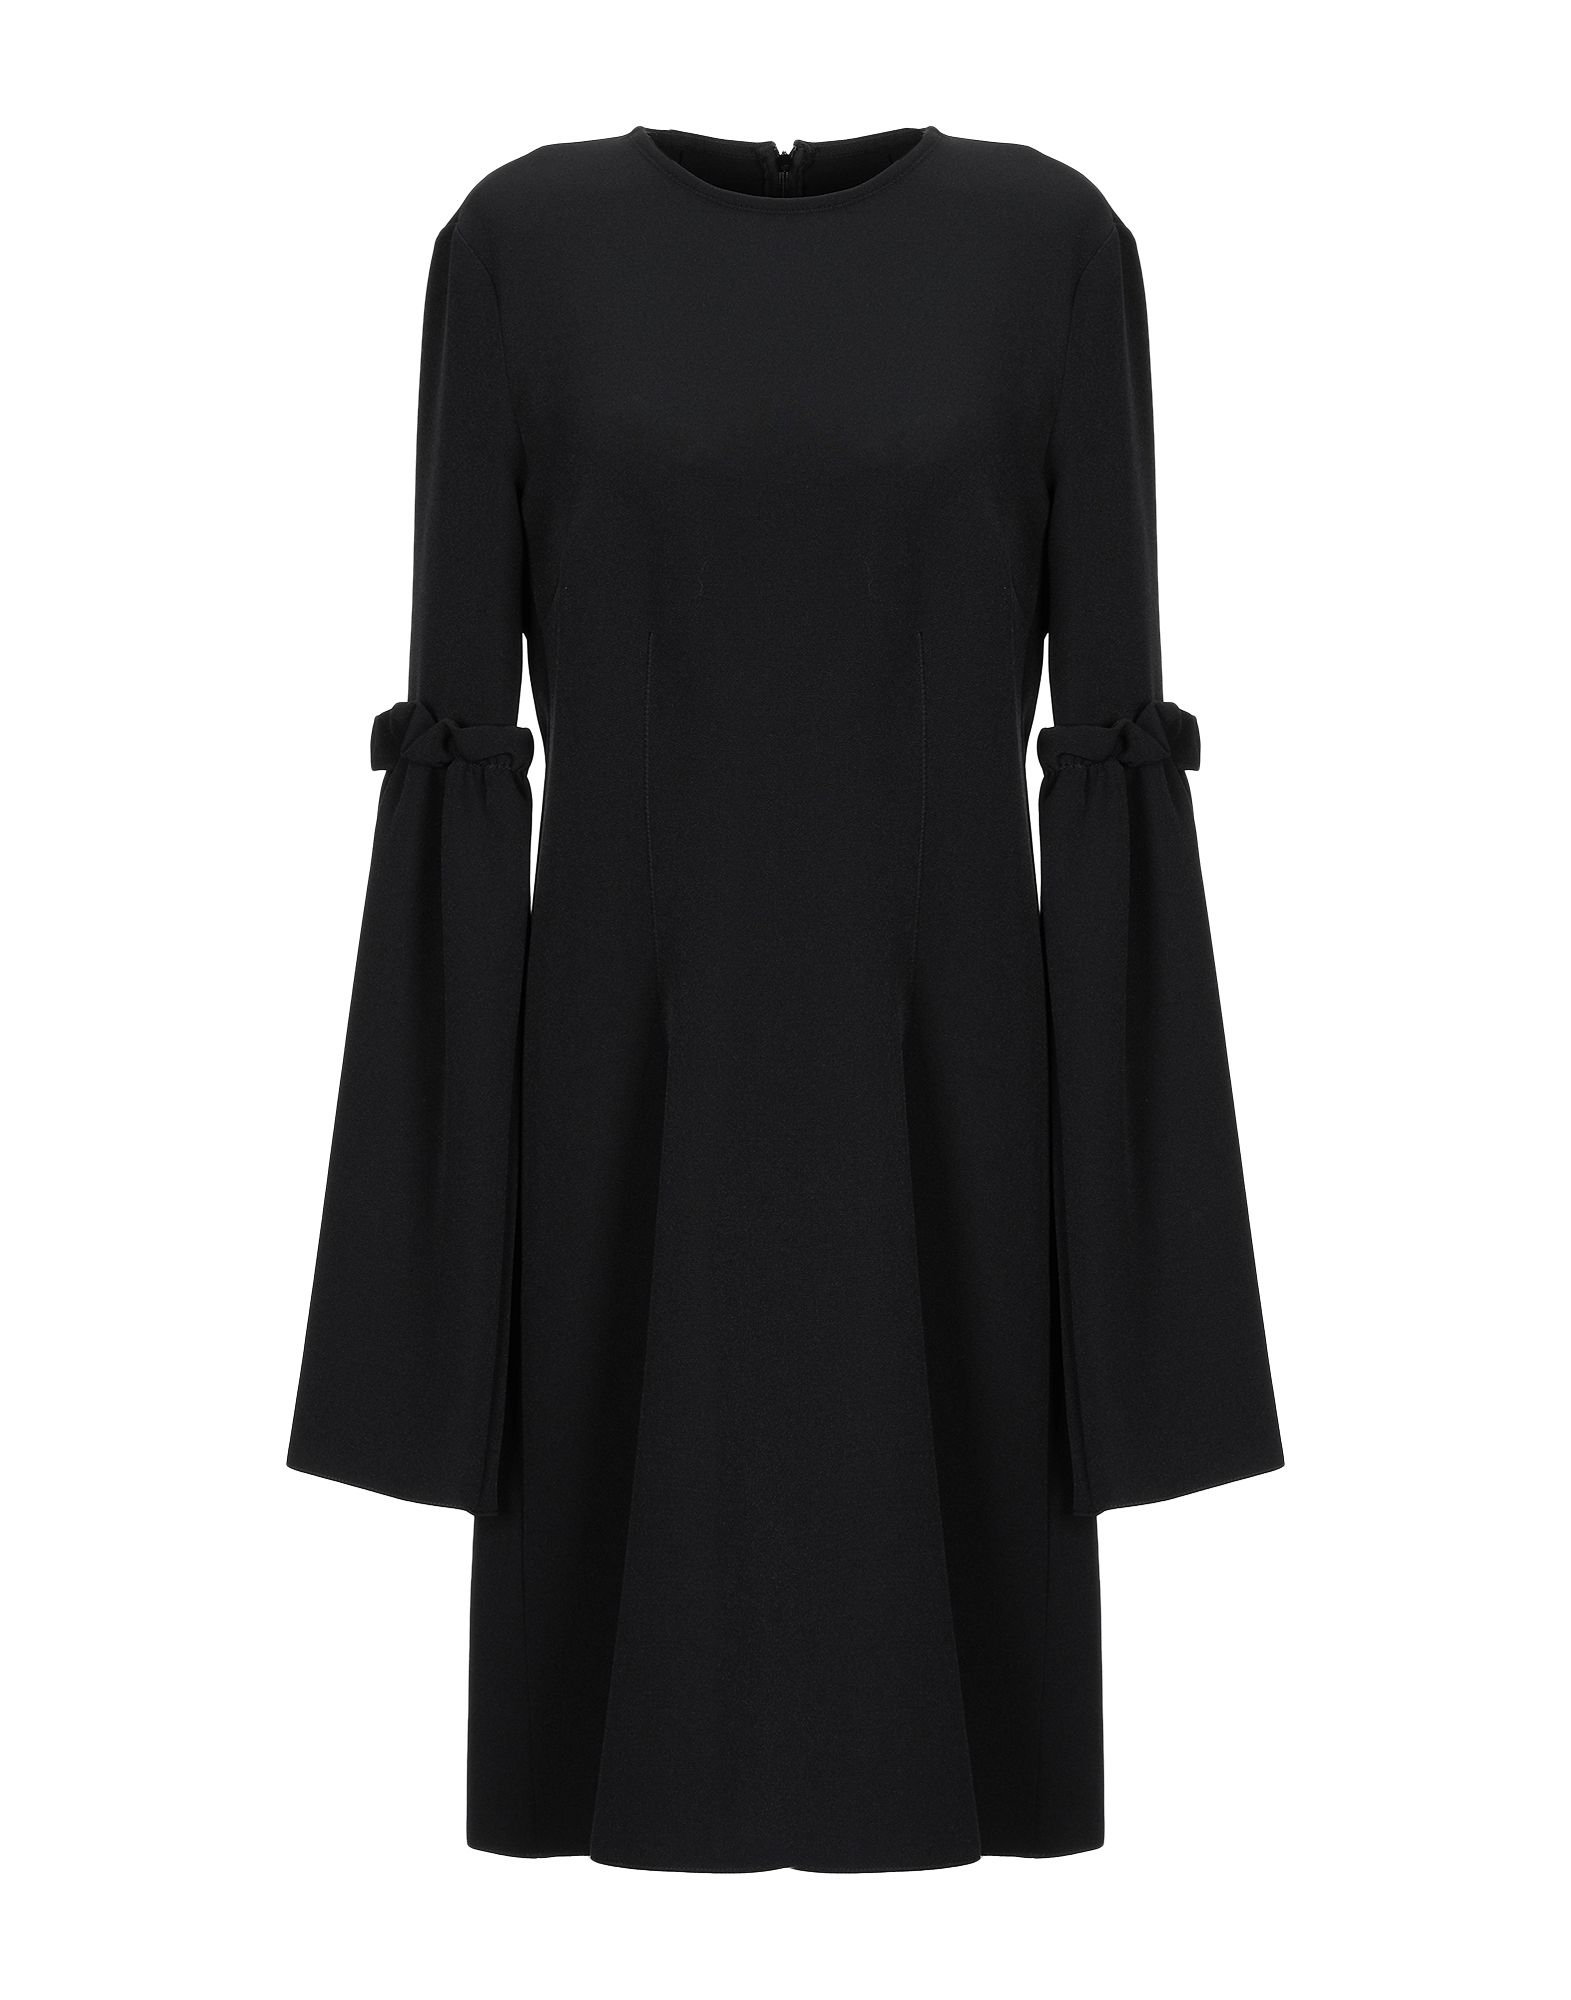 Mm6 Maison Margiela Short Dress In Black | ModeSens